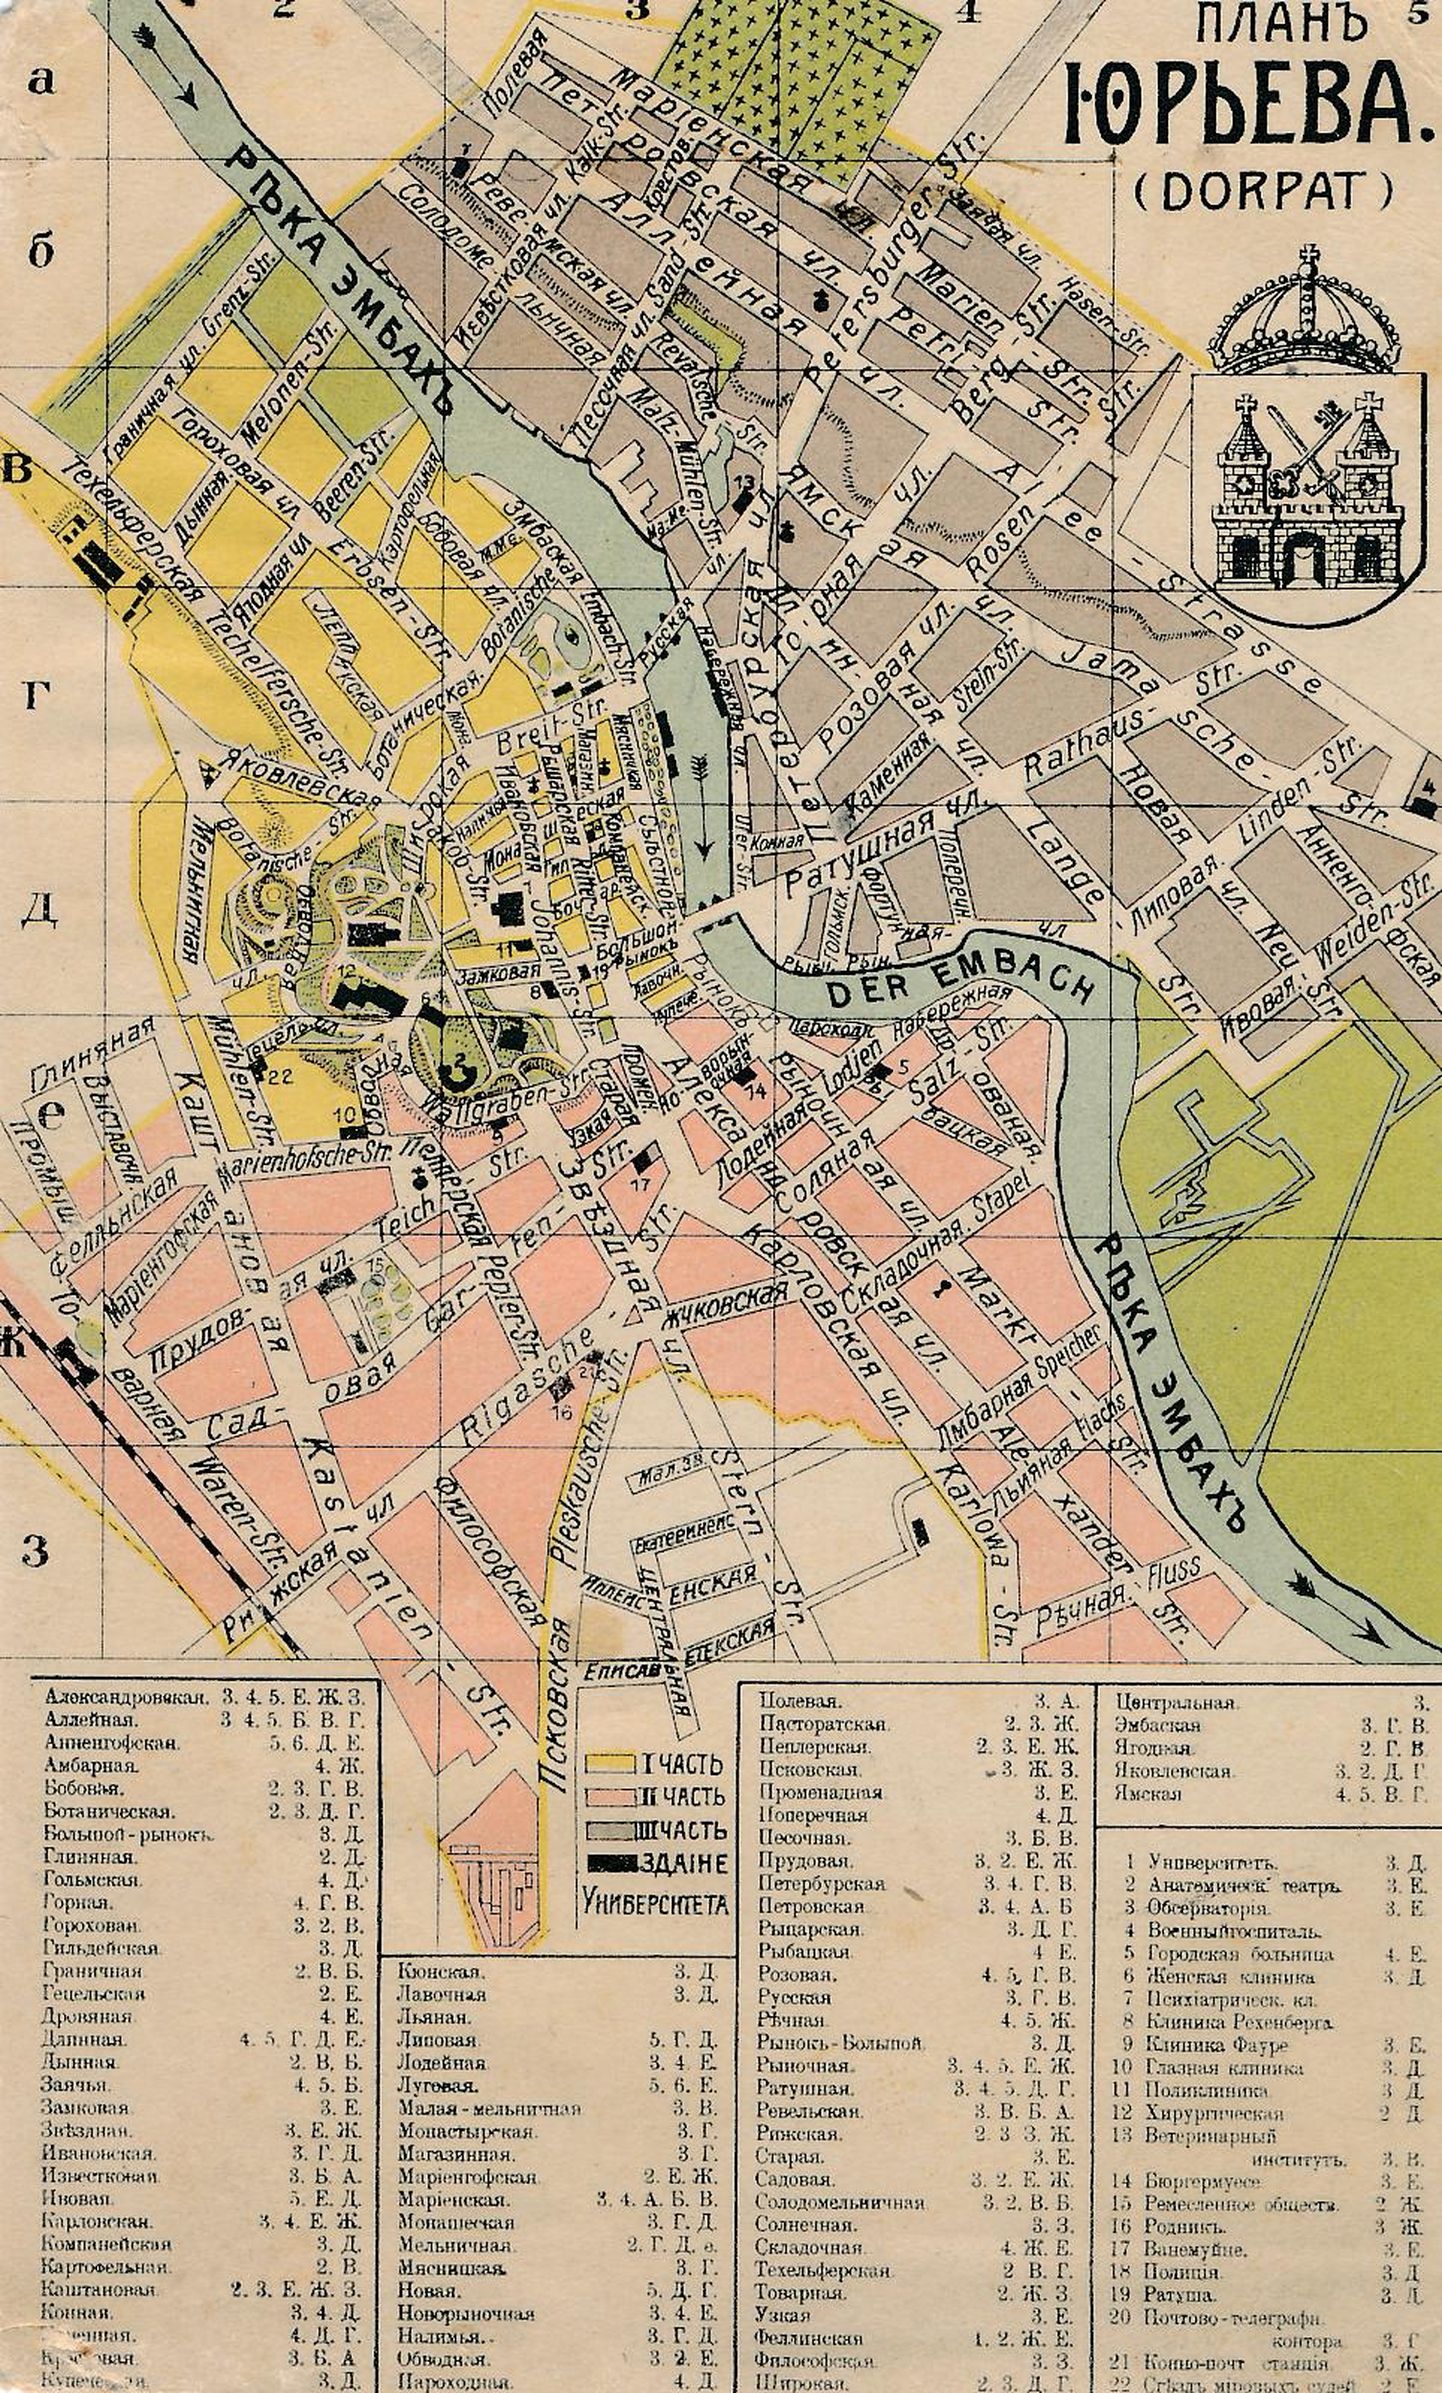 Jurjevi ehk Dorpati ehk Tartu plaanil on tähistatud eri värvidega I, II ja III linnaosa.